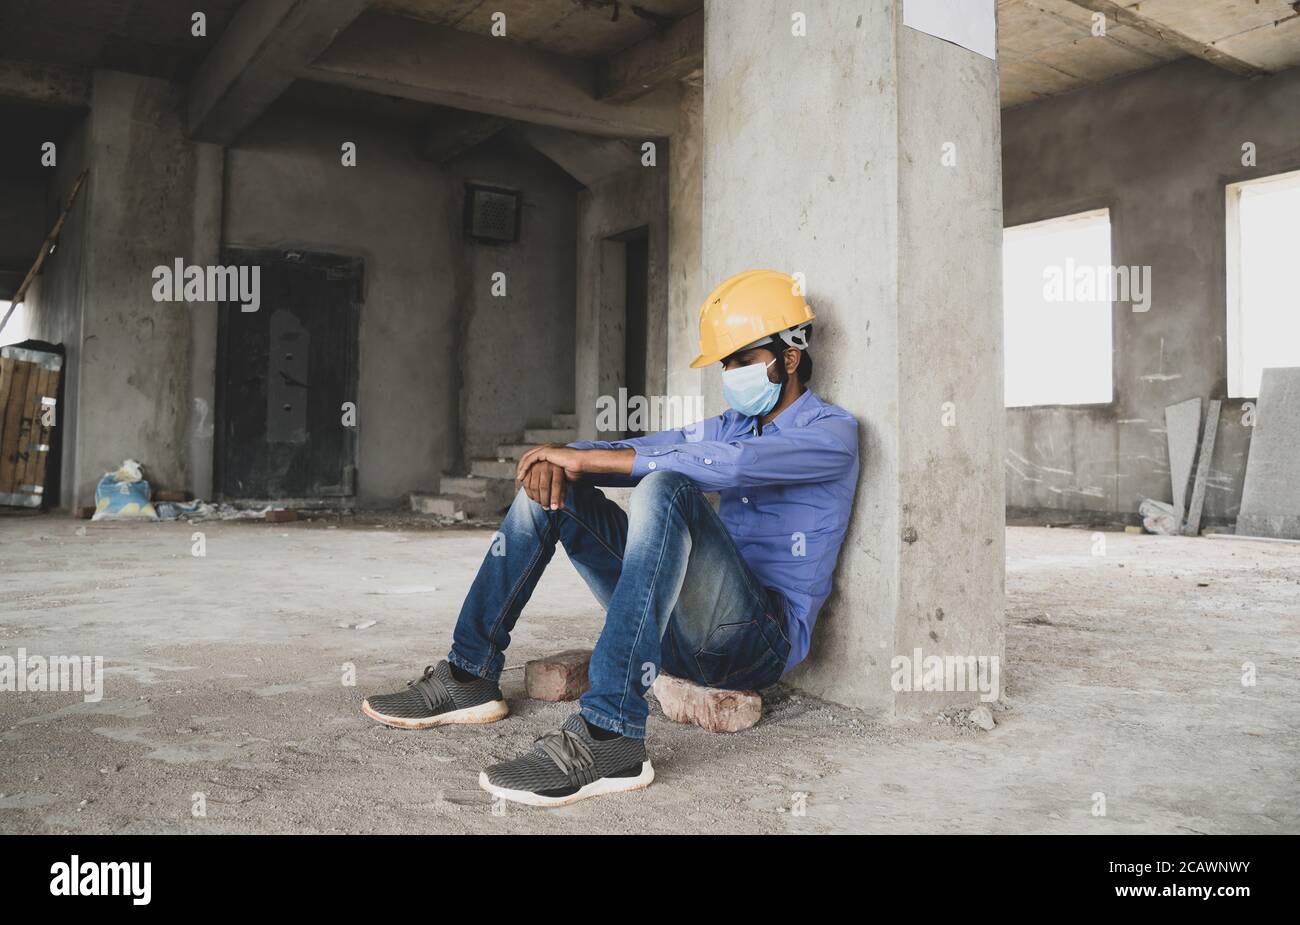 Travailleur de la construction assis triste et seul sur le chantier portant un masque médical avec casque pour empêcher la propagation de Covid-19, concept de chômage Banque D'Images